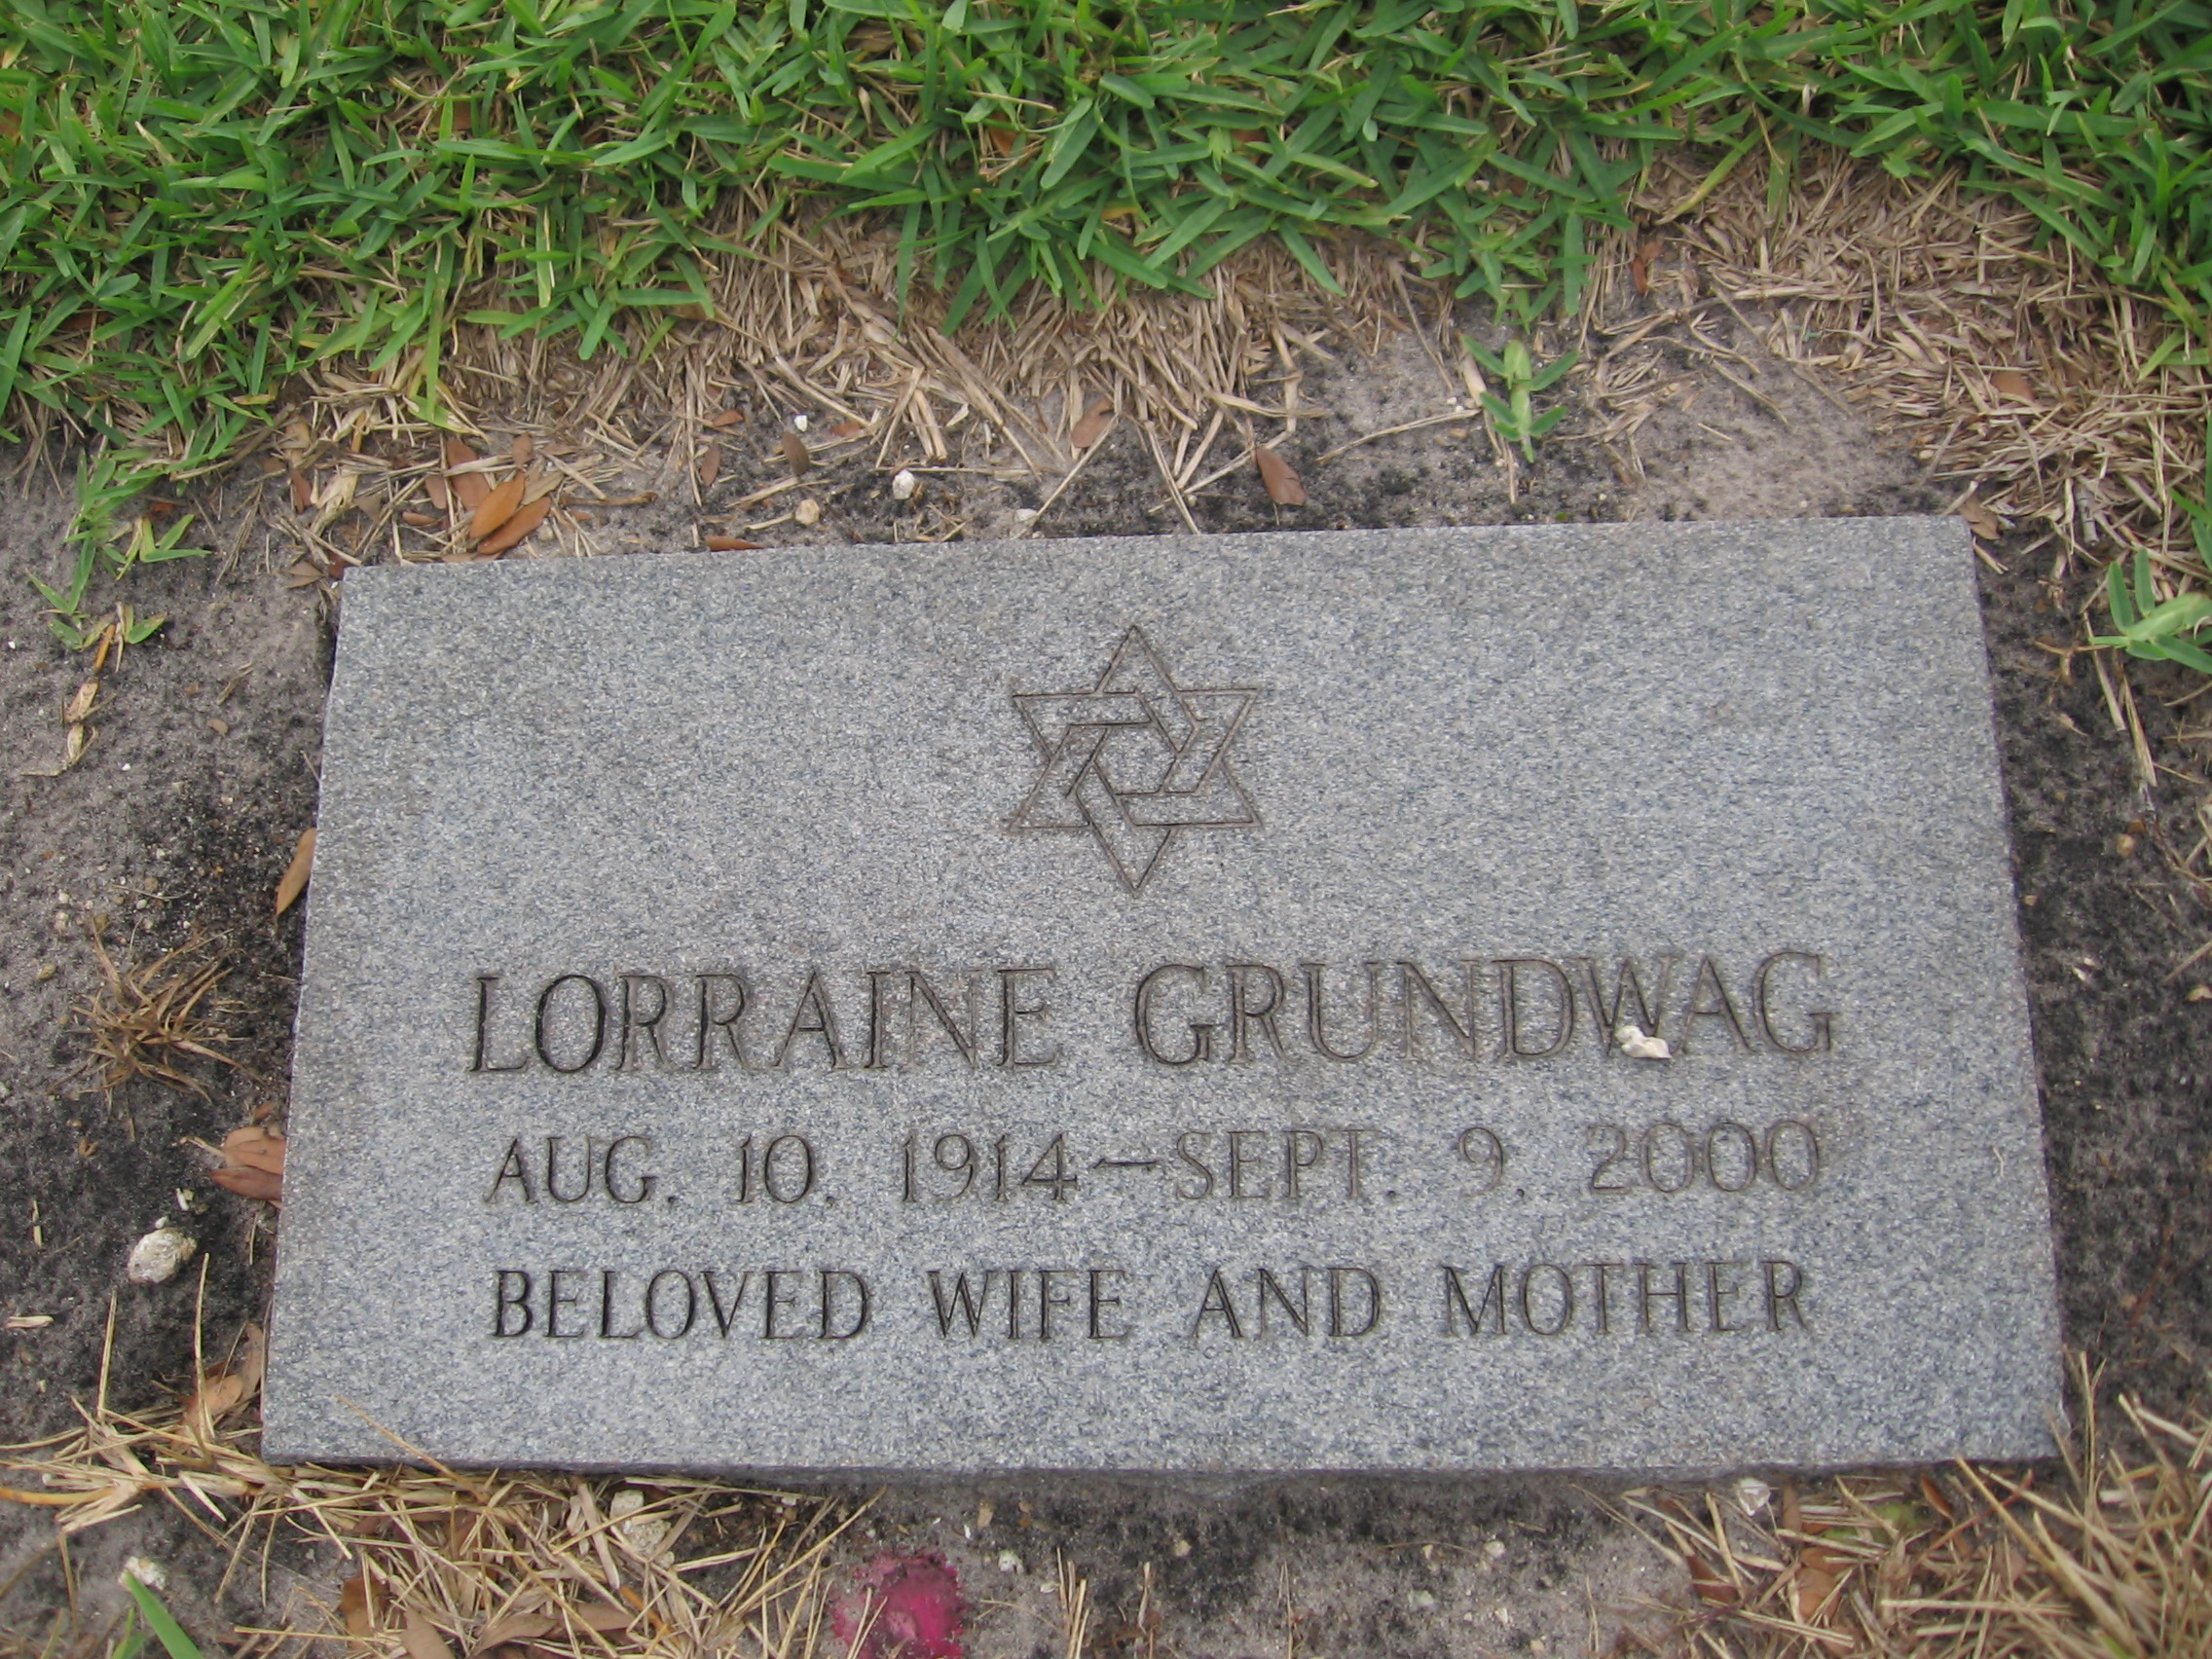 Lorraine Grundwag